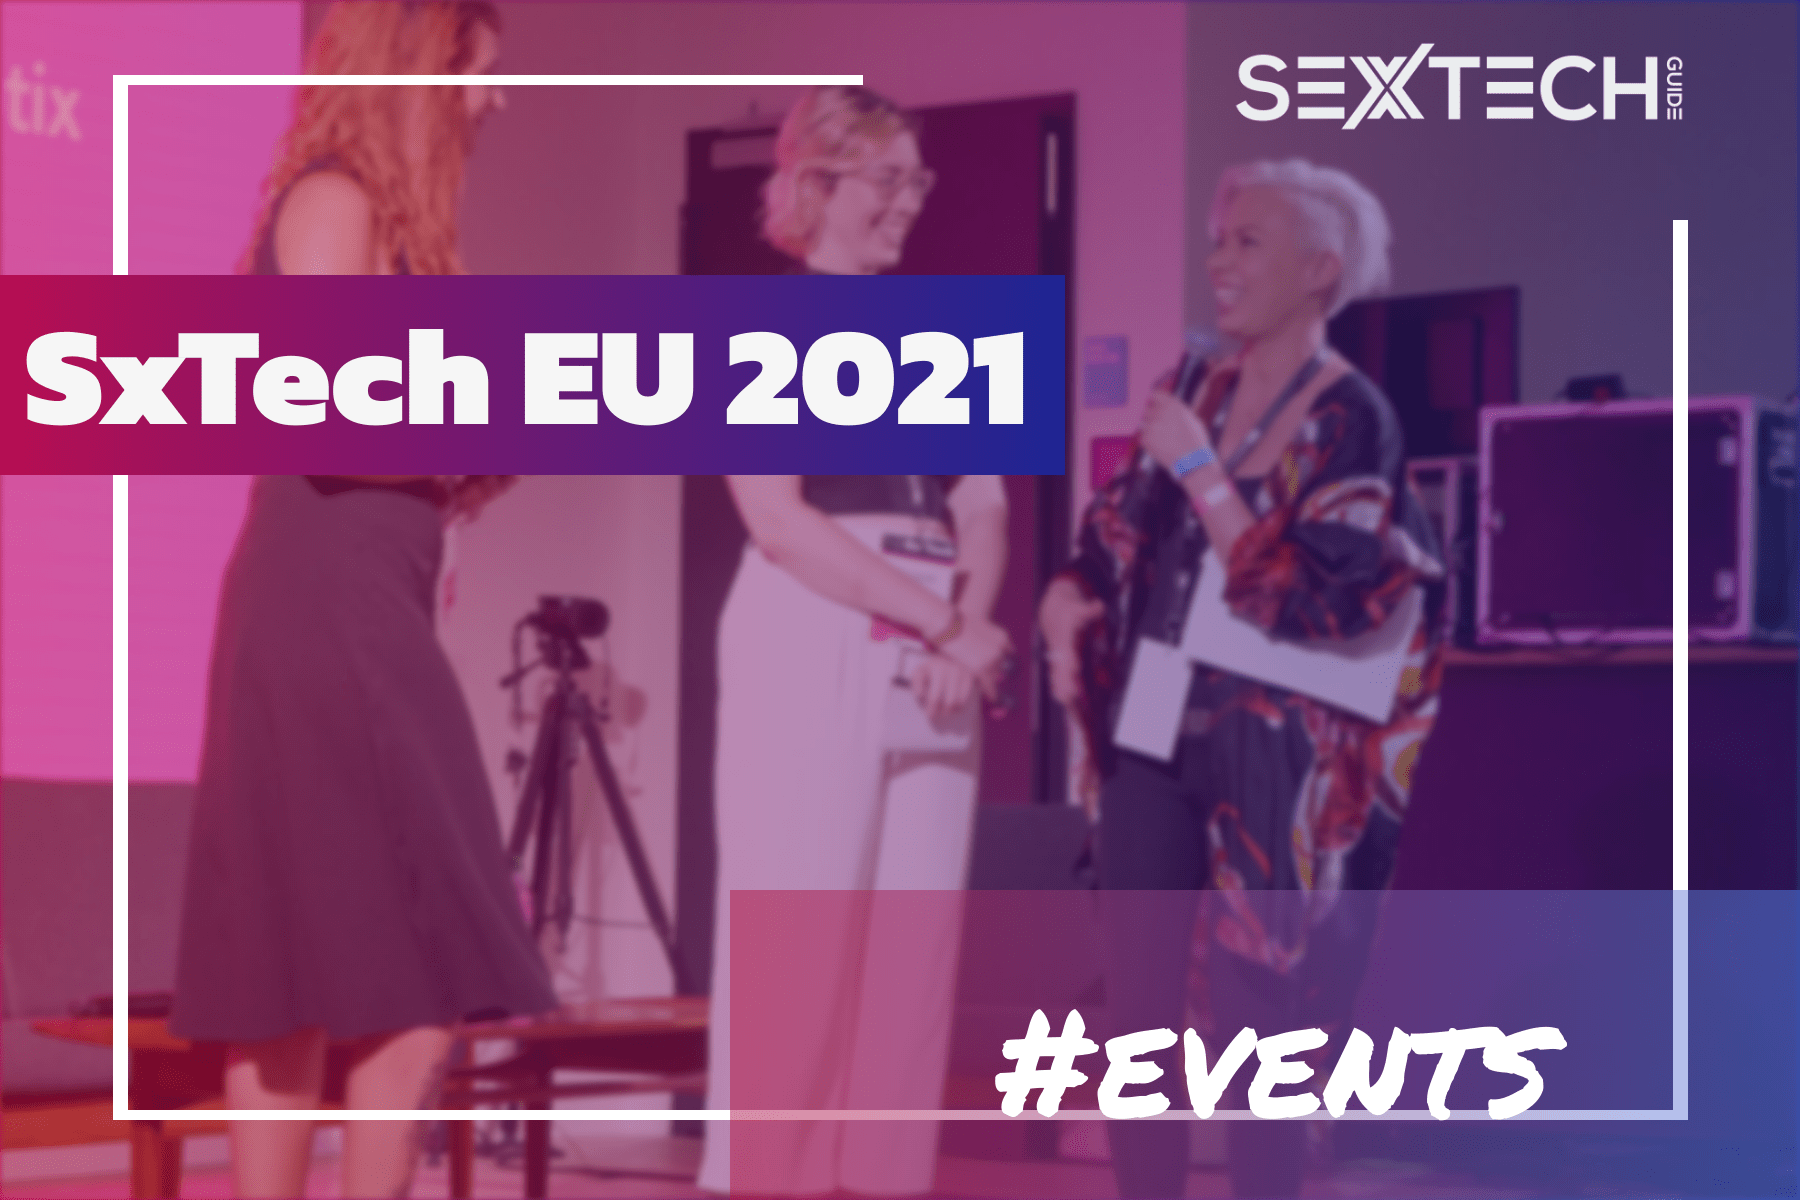 SxTech EU 2021 event